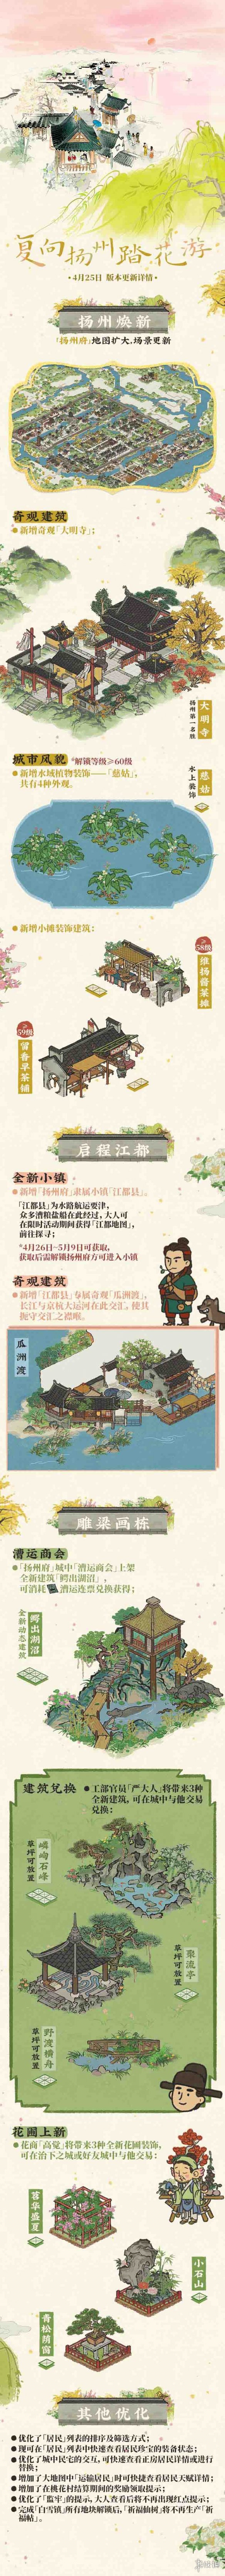 复向扬州踏花游——《江南百景图》3.3.0版本已正式上线啦！